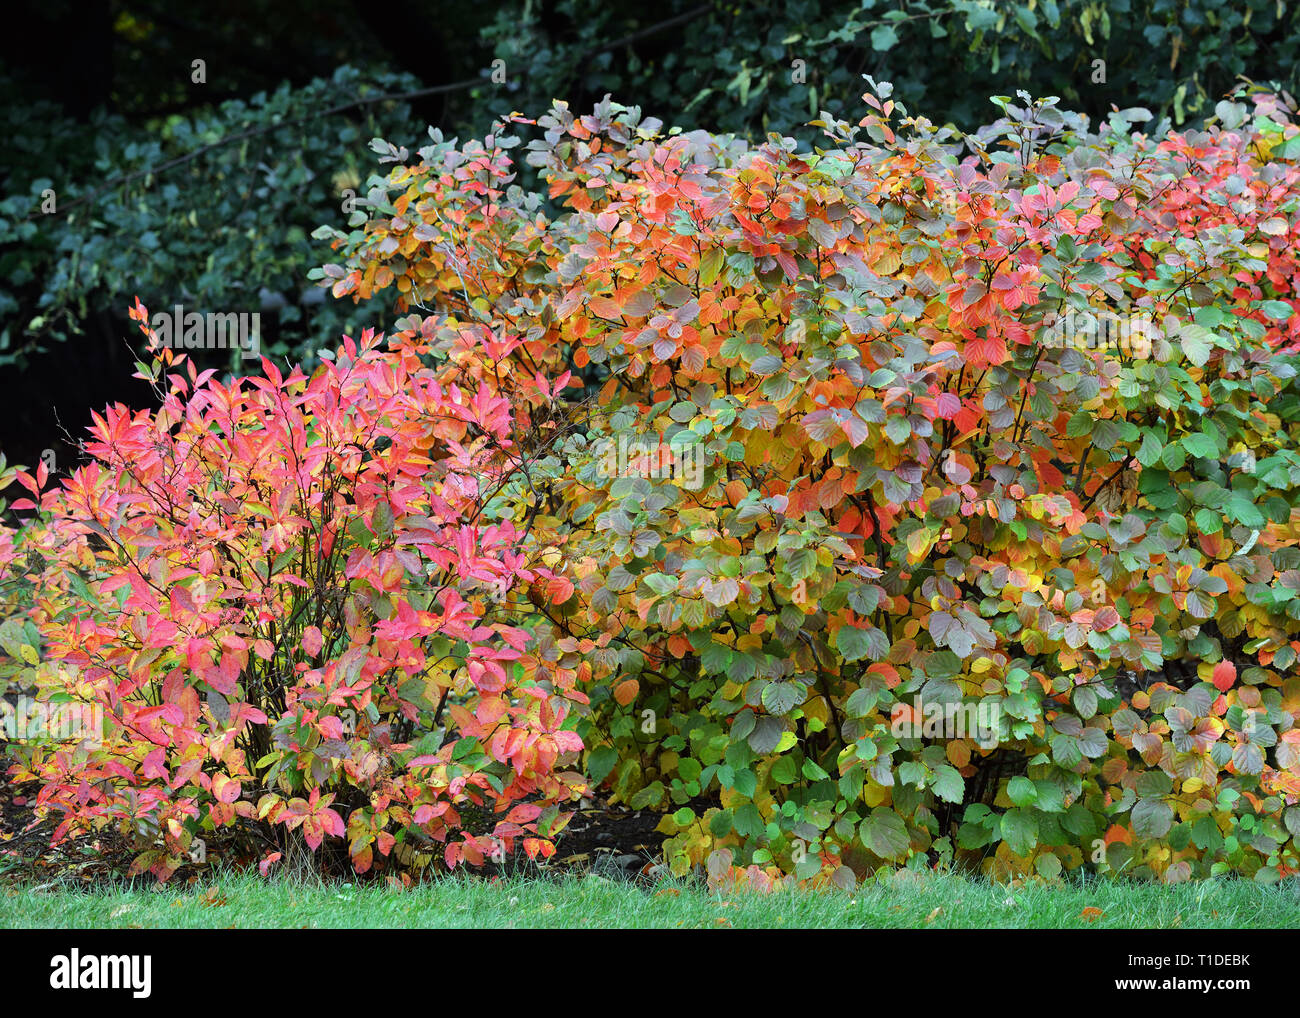 Fothergilla Mount Airy in Garten Hecke. Herbst Laub zeigt ziemlich bunt und einzigartigen Farben Gelb, Orange und Rot Lila Blätter. Stockfoto